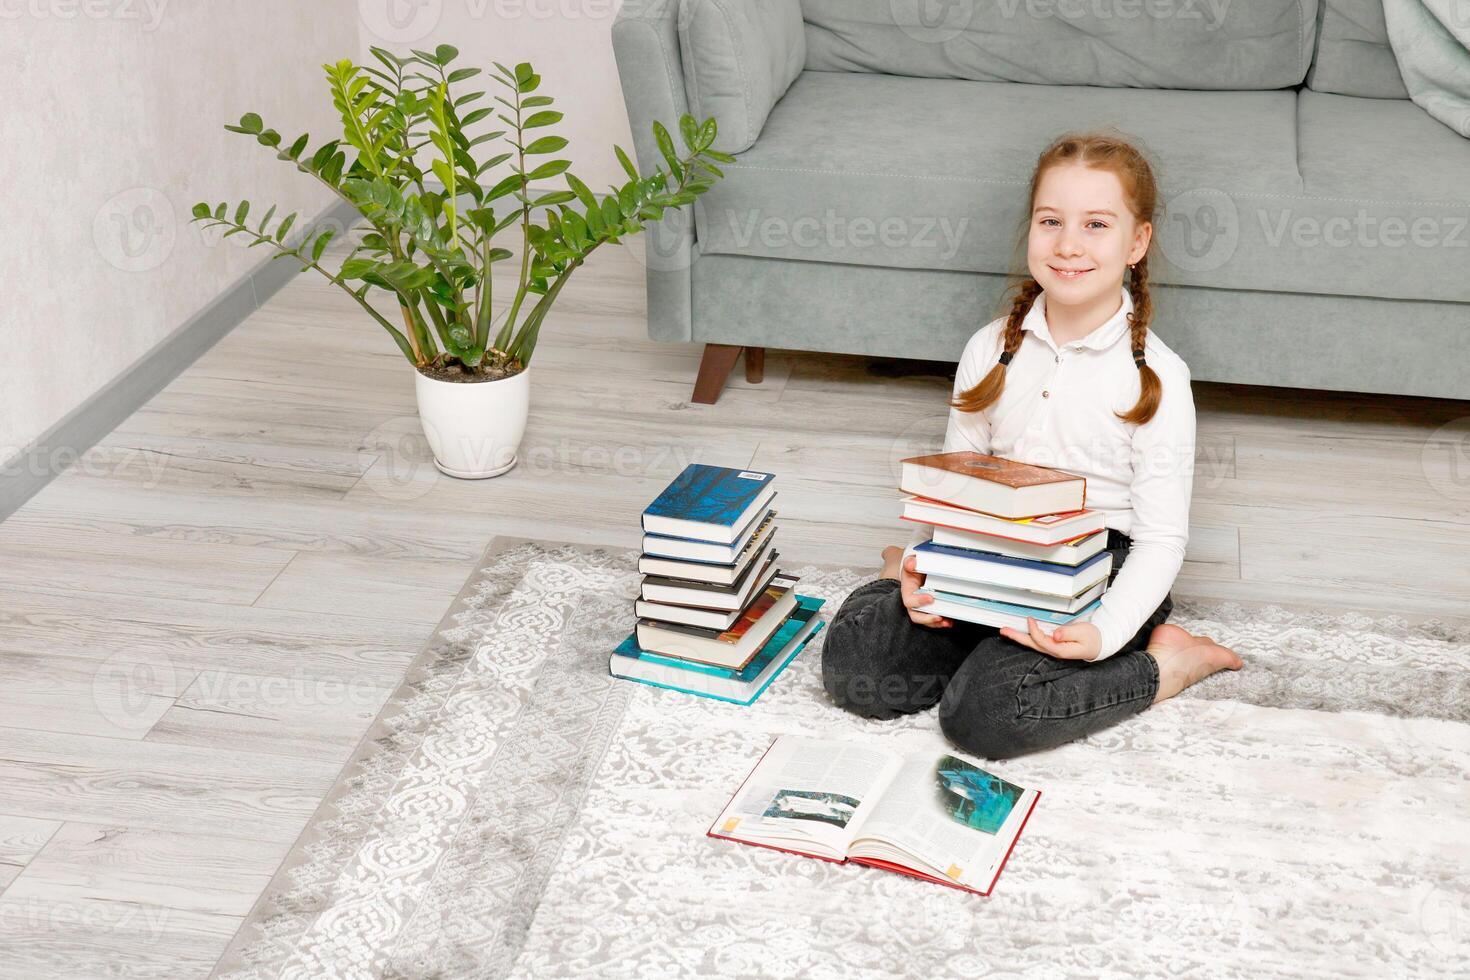 süß wenig Mädchen Sitzung auf das Fußboden beim Zuhause mit ein Stapel von Bücher im ihr Hände foto